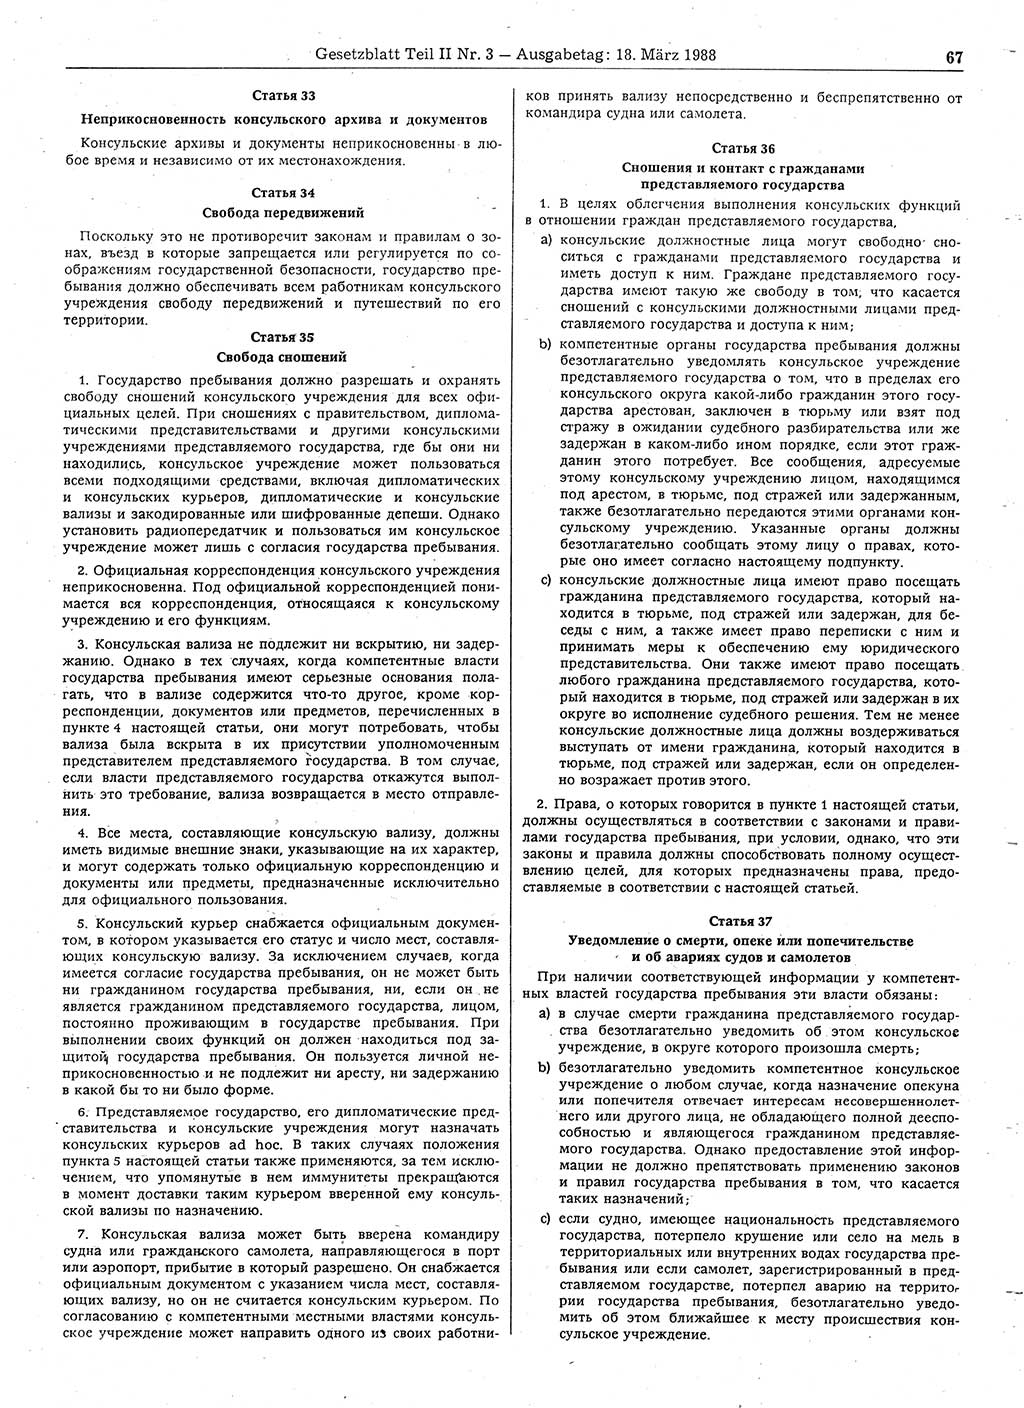 Gesetzblatt (GBl.) der Deutschen Demokratischen Republik (DDR) Teil ⅠⅠ 1988, Seite 67 (GBl. DDR ⅠⅠ 1988, S. 67)